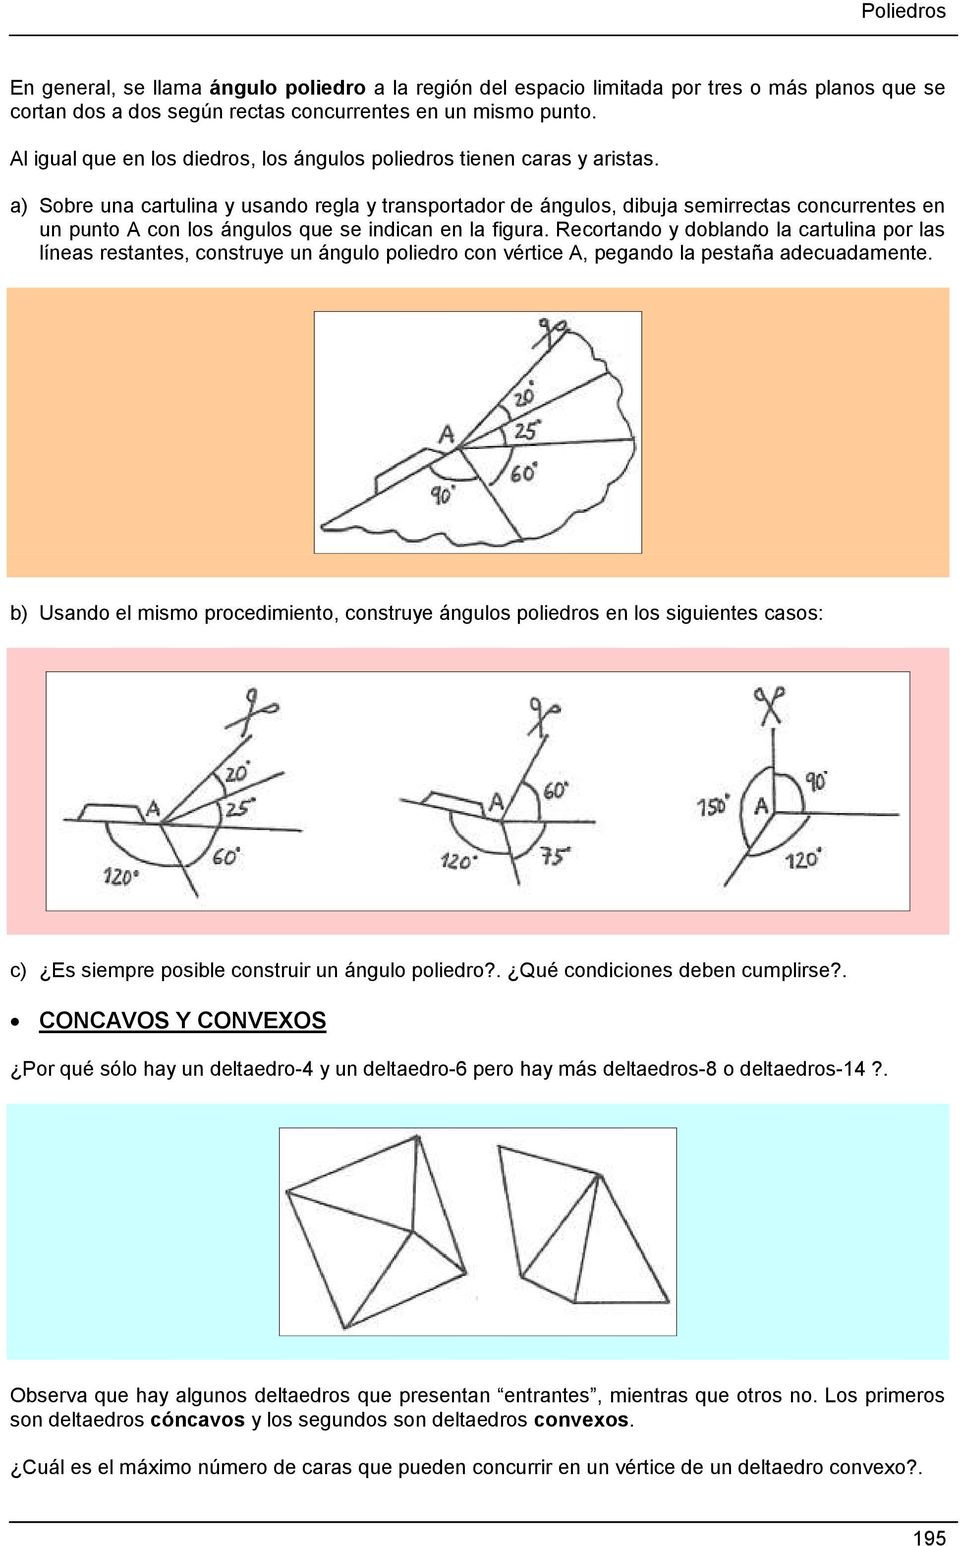 a) Sobre una cartulina y usando regla y transportador de ángulos, dibuja semirrectas concurrentes en un punto A con los ángulos que se indican en la figura.